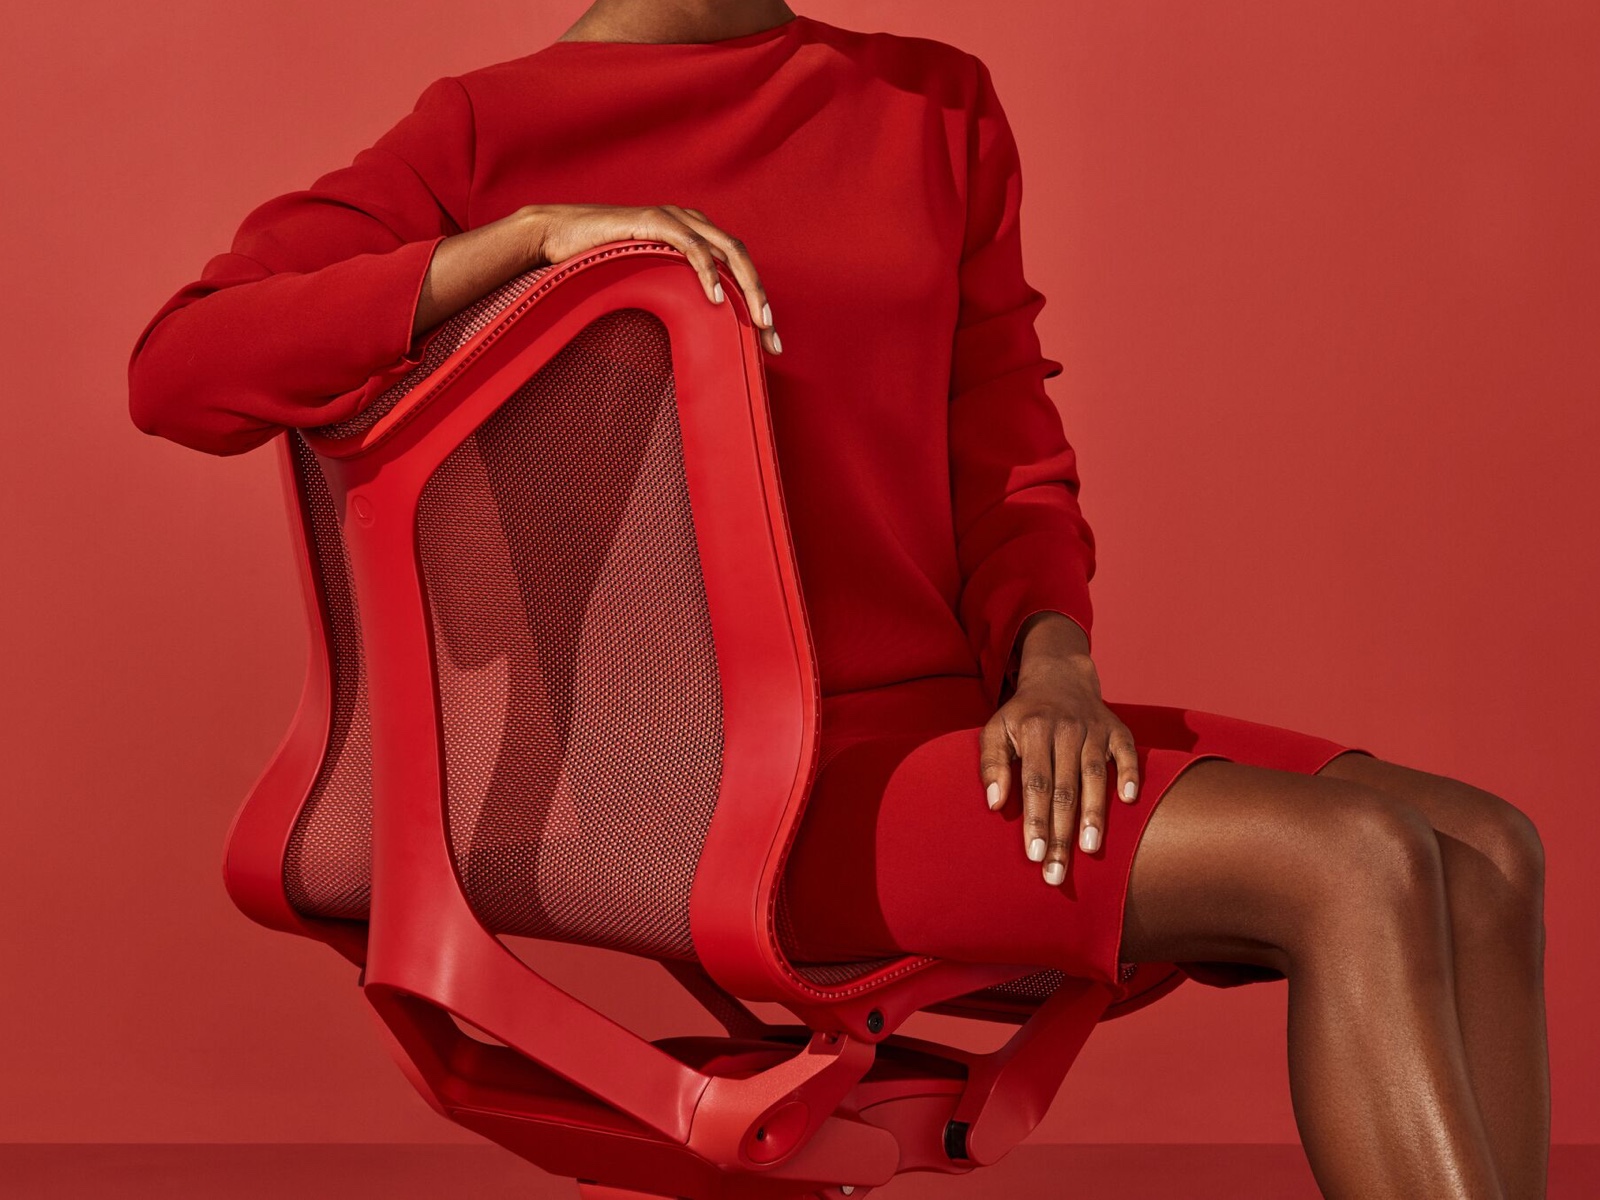 Eine Frau im roten Kleid sitzt in Canyon-Rot auf einem Cosm-Stuhl.